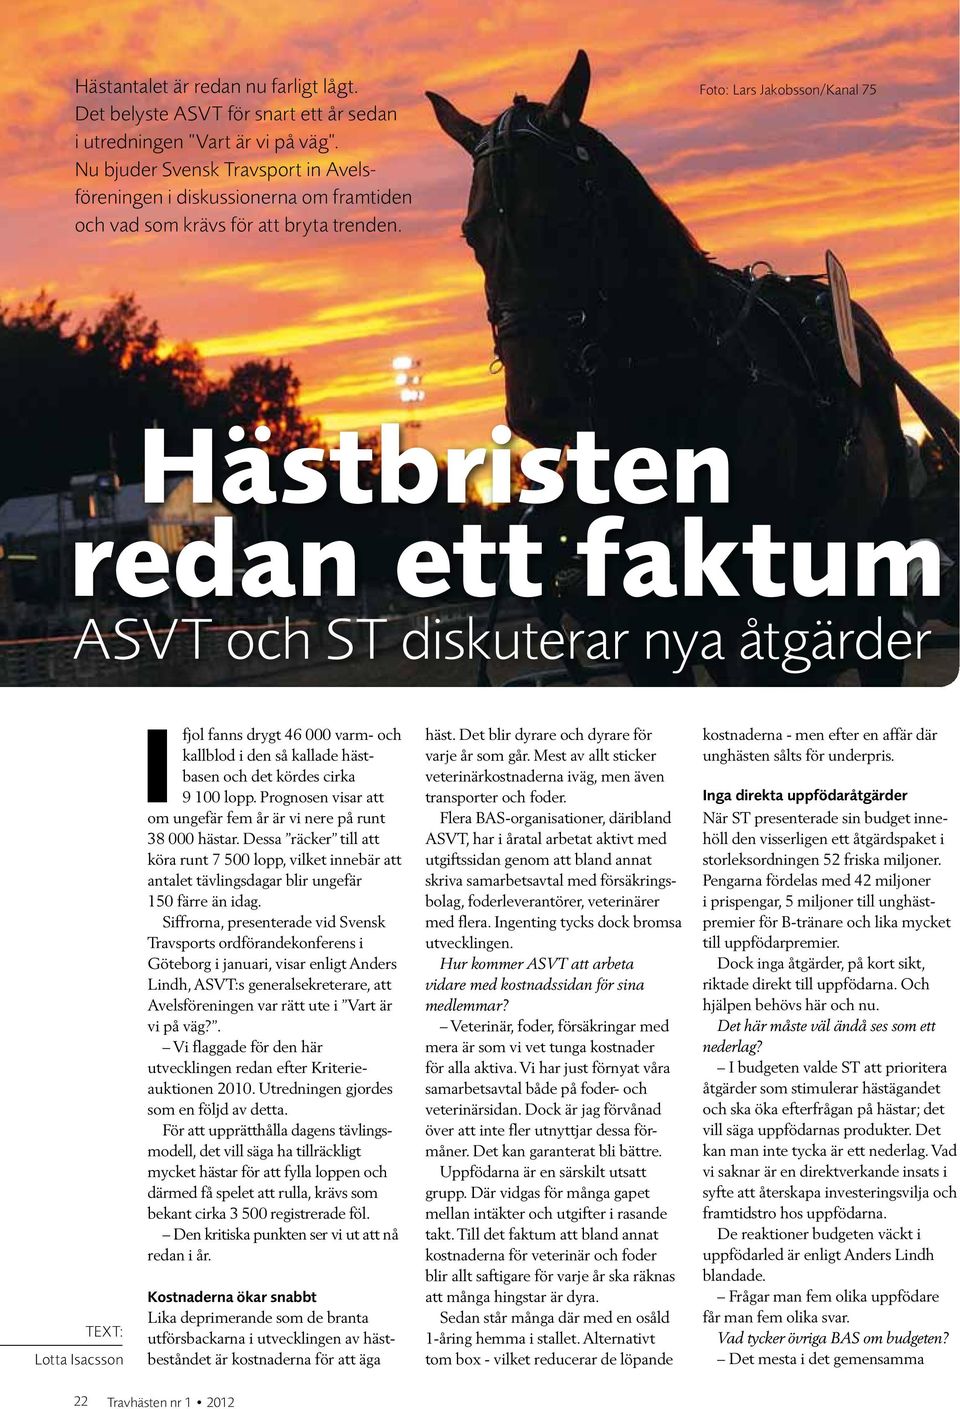 Foto: Lars Jakobsson/Kanal 75 Hästbristen redan ett faktum ASVT och ST diskuterar nya åtgärder Text: Lotta Isacsson Ifjol fanns drygt 46 000 varm- och kallblod i den så kallade hästbasen och det